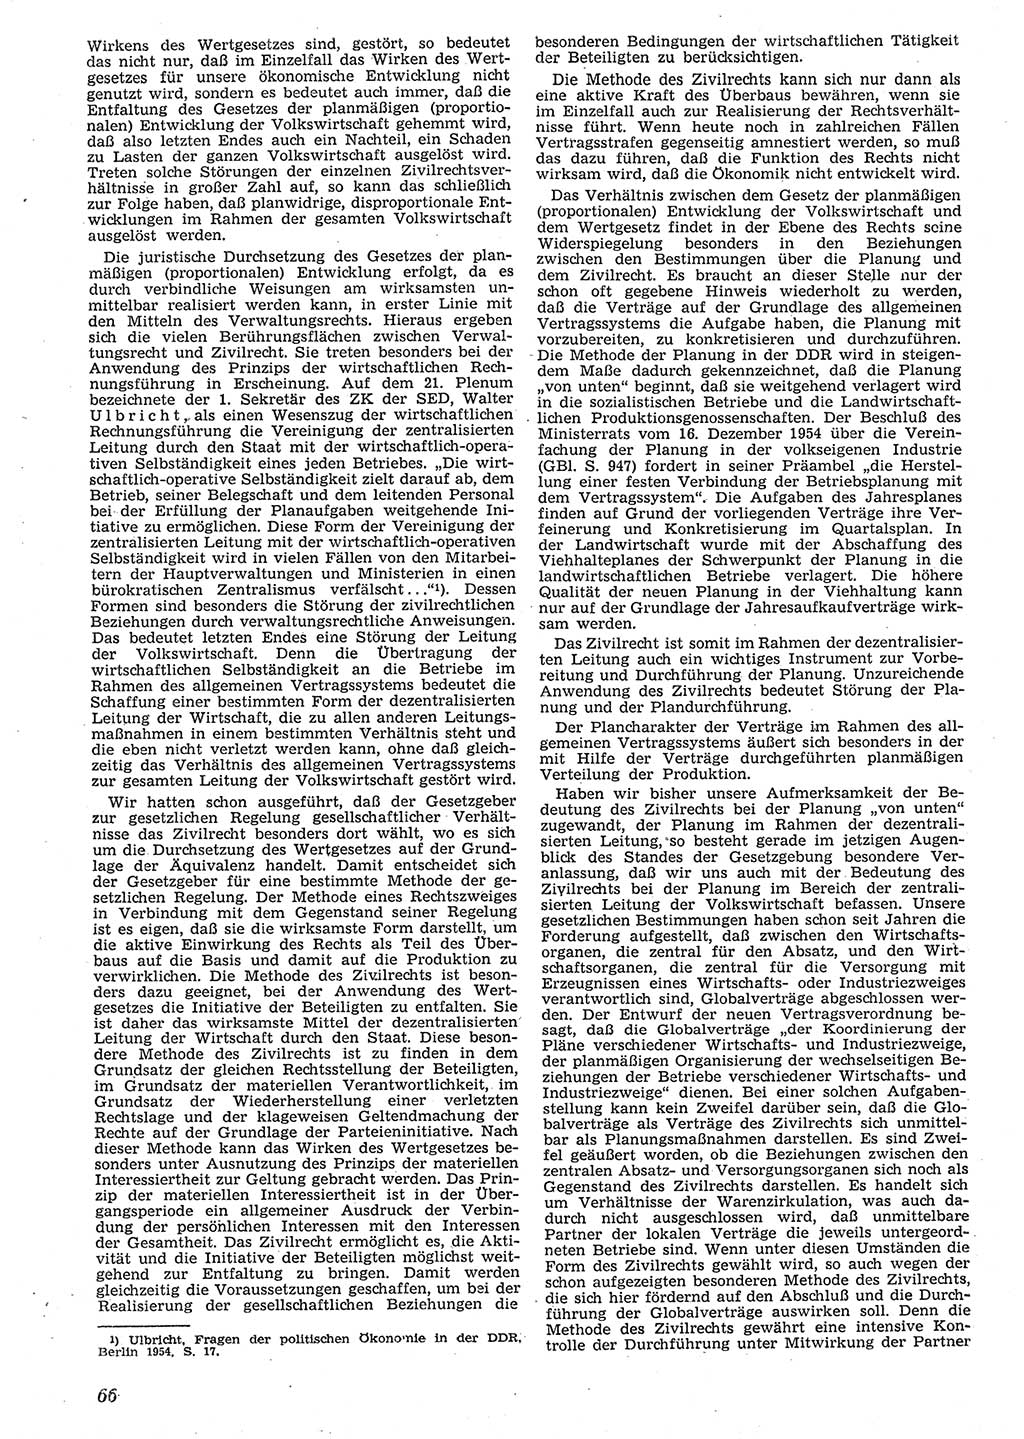 Neue Justiz (NJ), Zeitschrift für Recht und Rechtswissenschaft [Deutsche Demokratische Republik (DDR)], 10. Jahrgang 1956, Seite 66 (NJ DDR 1956, S. 66)